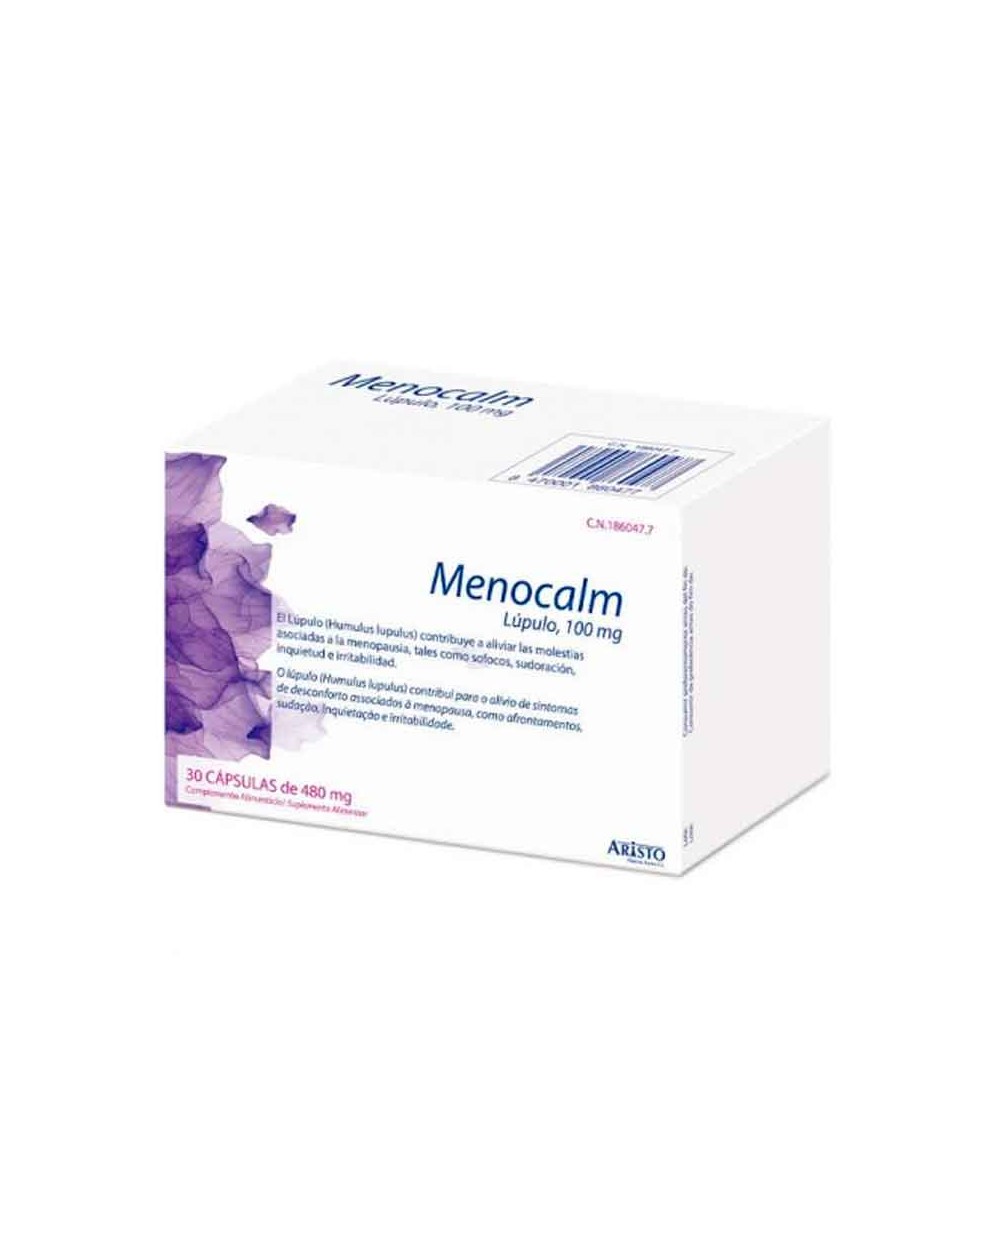 Menocalm Lúpulo de Aristo alivia los síntomas de la menopausia– 100g. 30 cápsulas